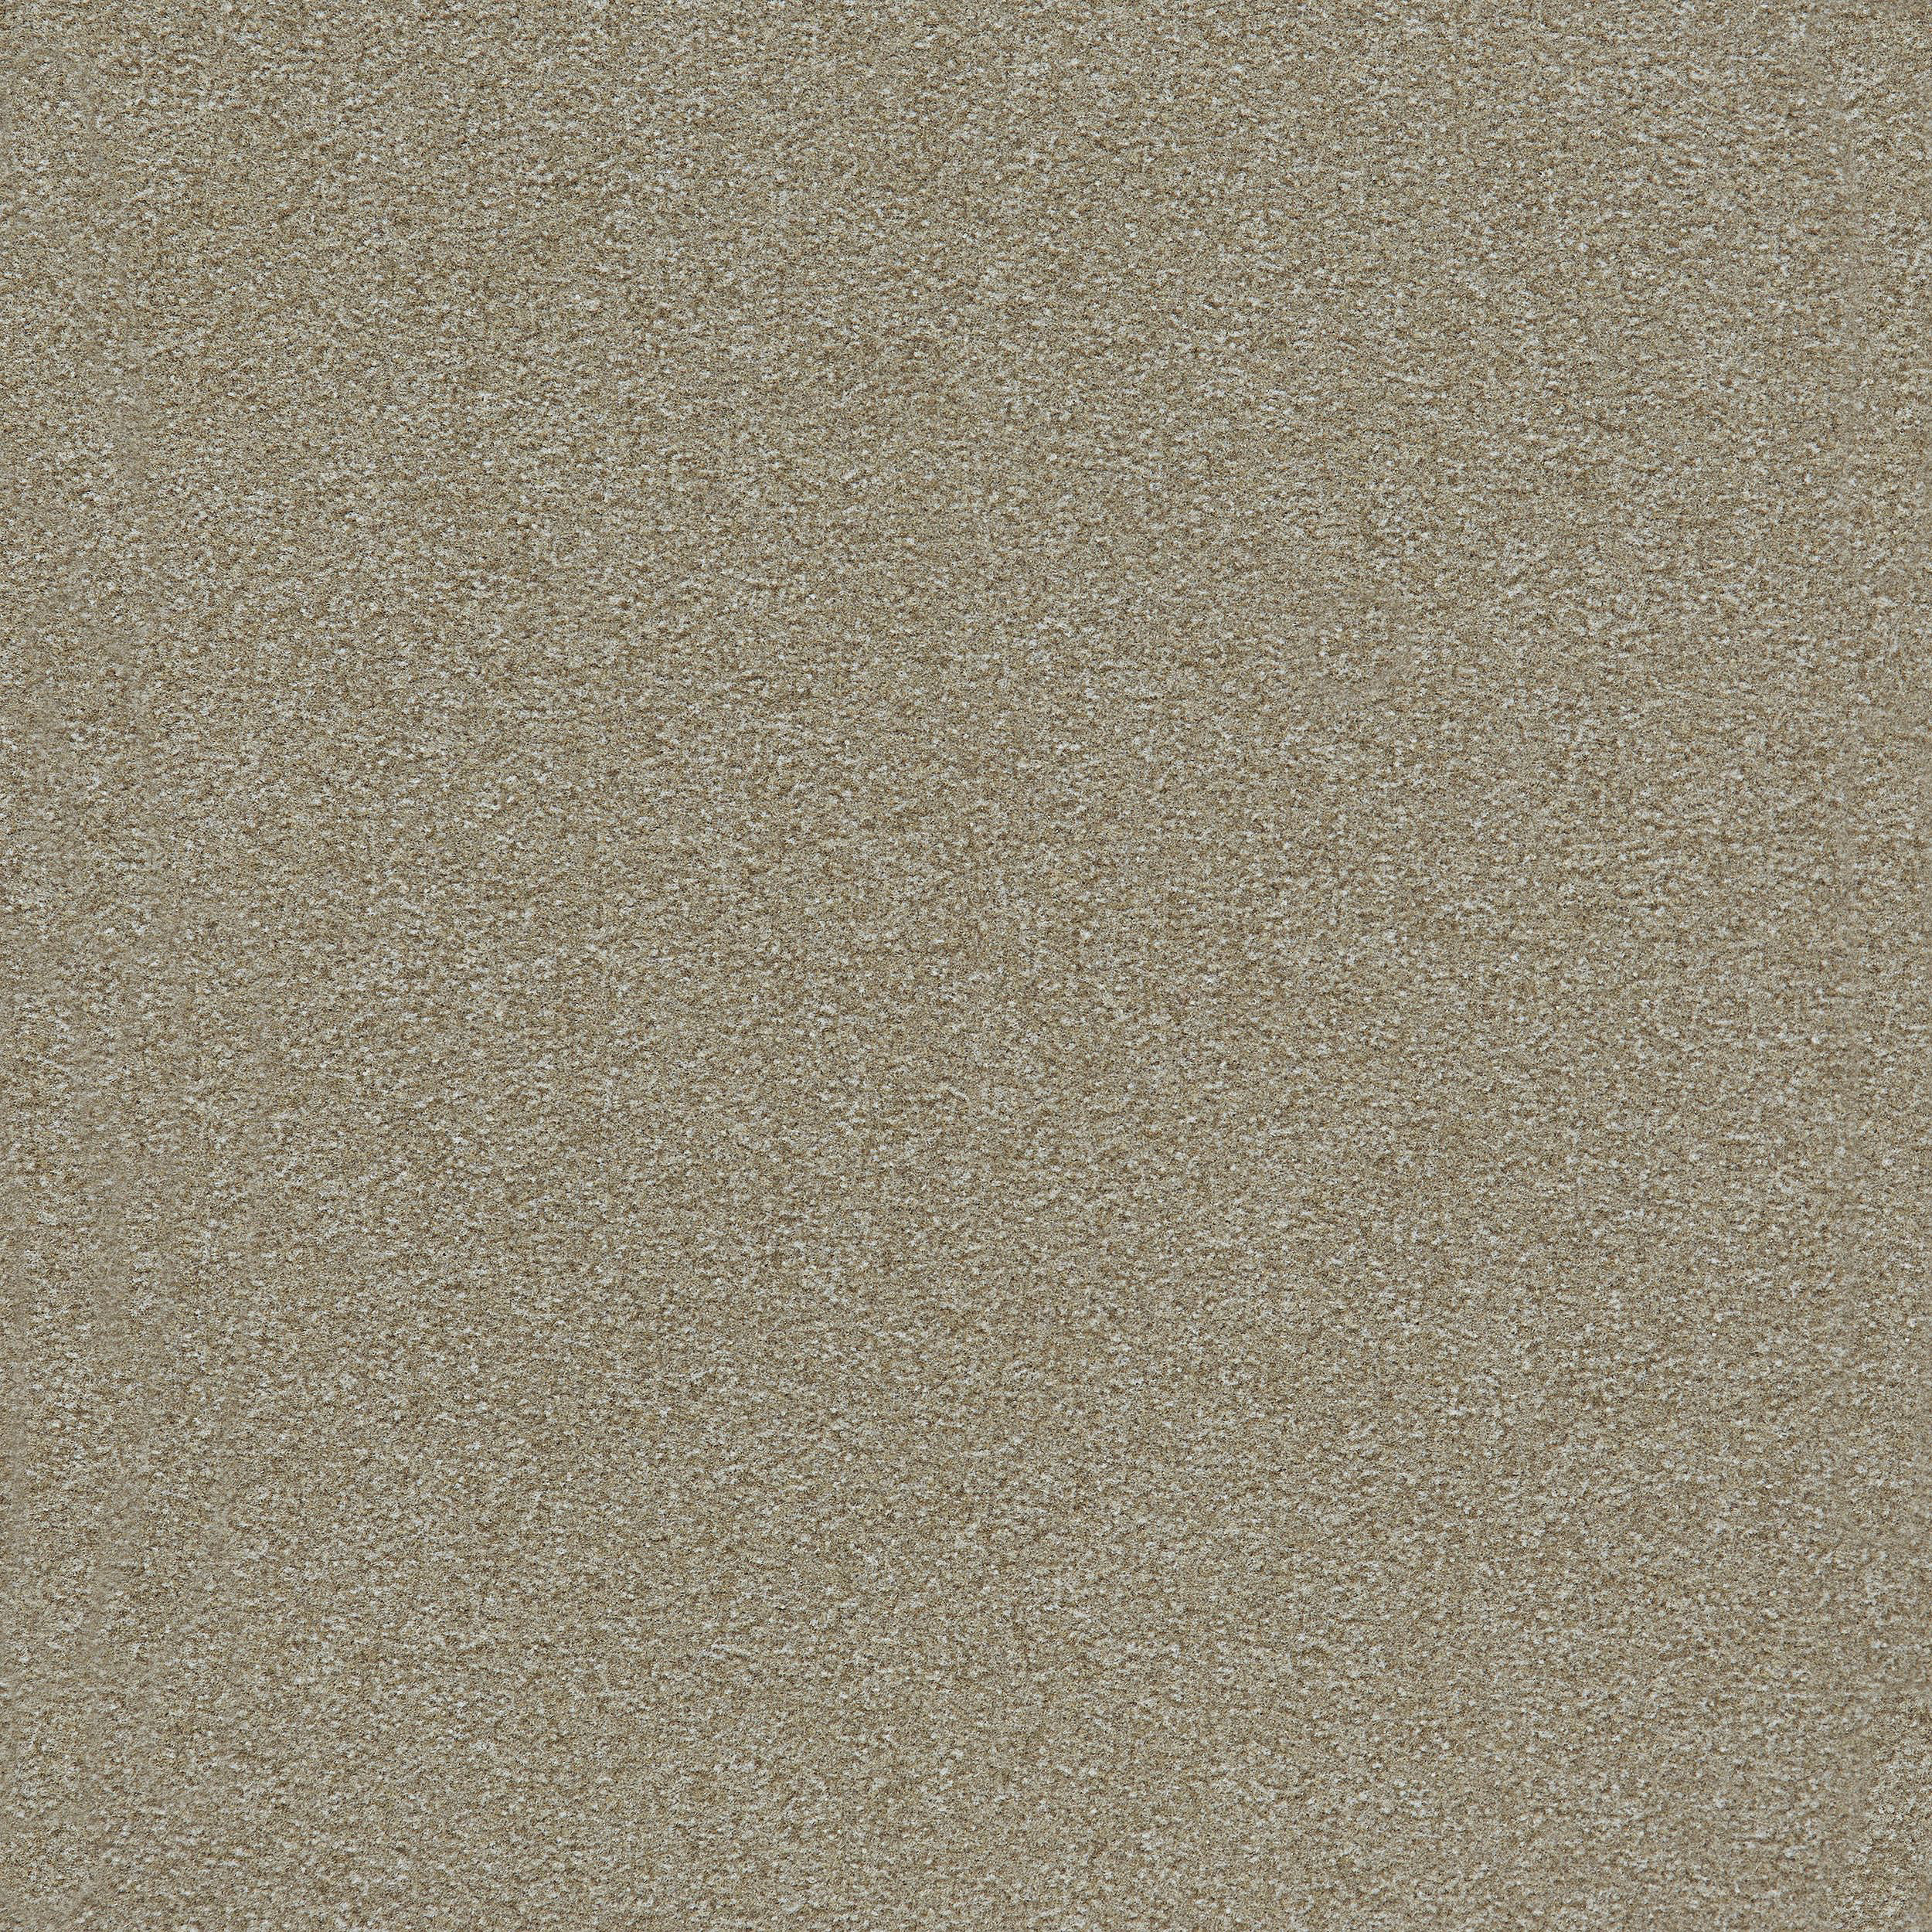 Heuga 725 Carpet Tile In Oyster image number 11